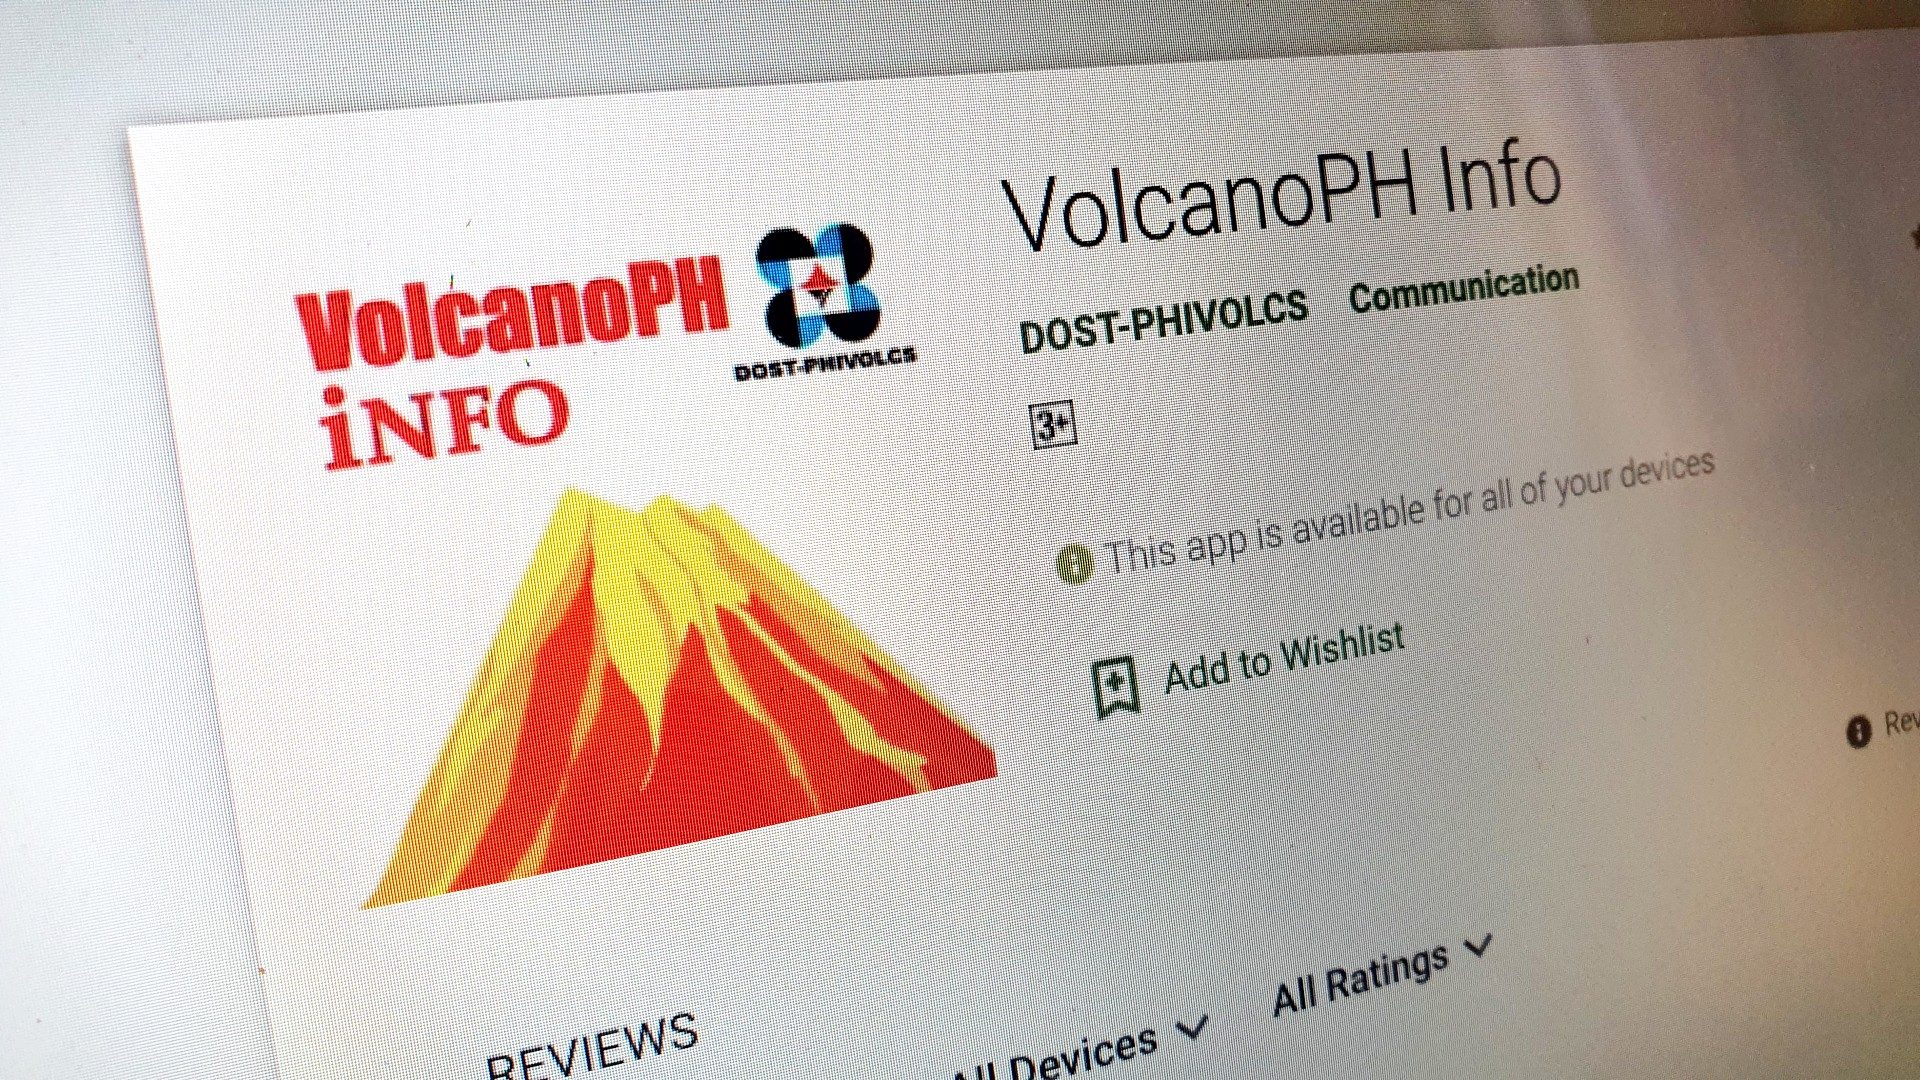 Phivolcs launches VolcanoPH app